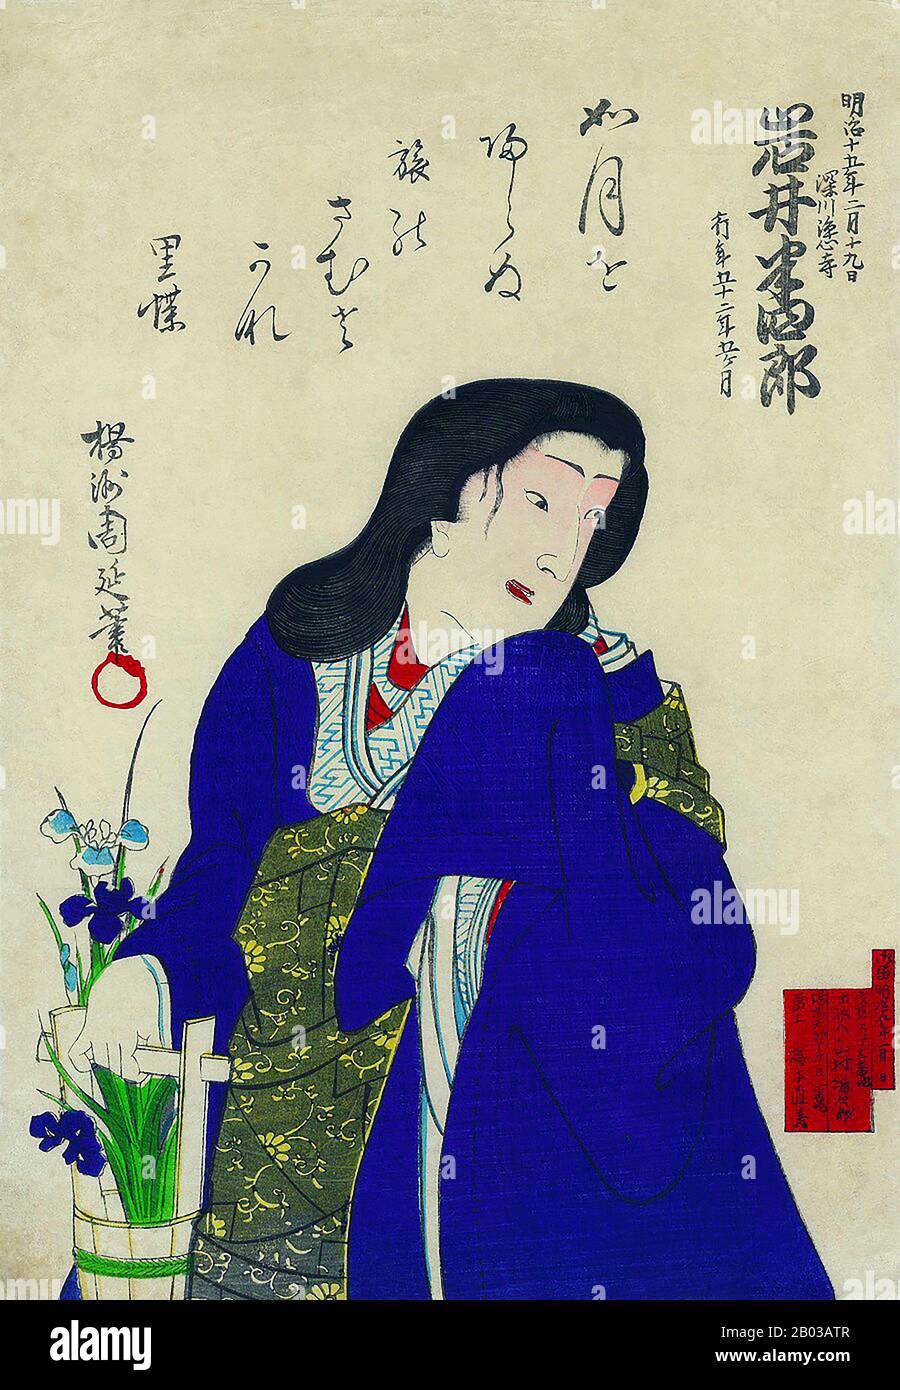 Iwai Hanshiro VIII. War ein Kabuki-Performer, einer der größten des 19. Jahrhunderts. Er war vor allem für seine weiblichen Rollen und für seinen Platz in einer langen Linie von Kabuki-Schauspielern bekannt, die alle den gleichen Künstlernamen nahmen, von Vater zu Sohn weitergegeben. Iwai Hanshiro nahm 1872 den Künstlernamen und Mantel seines Vaters an. Stockfoto